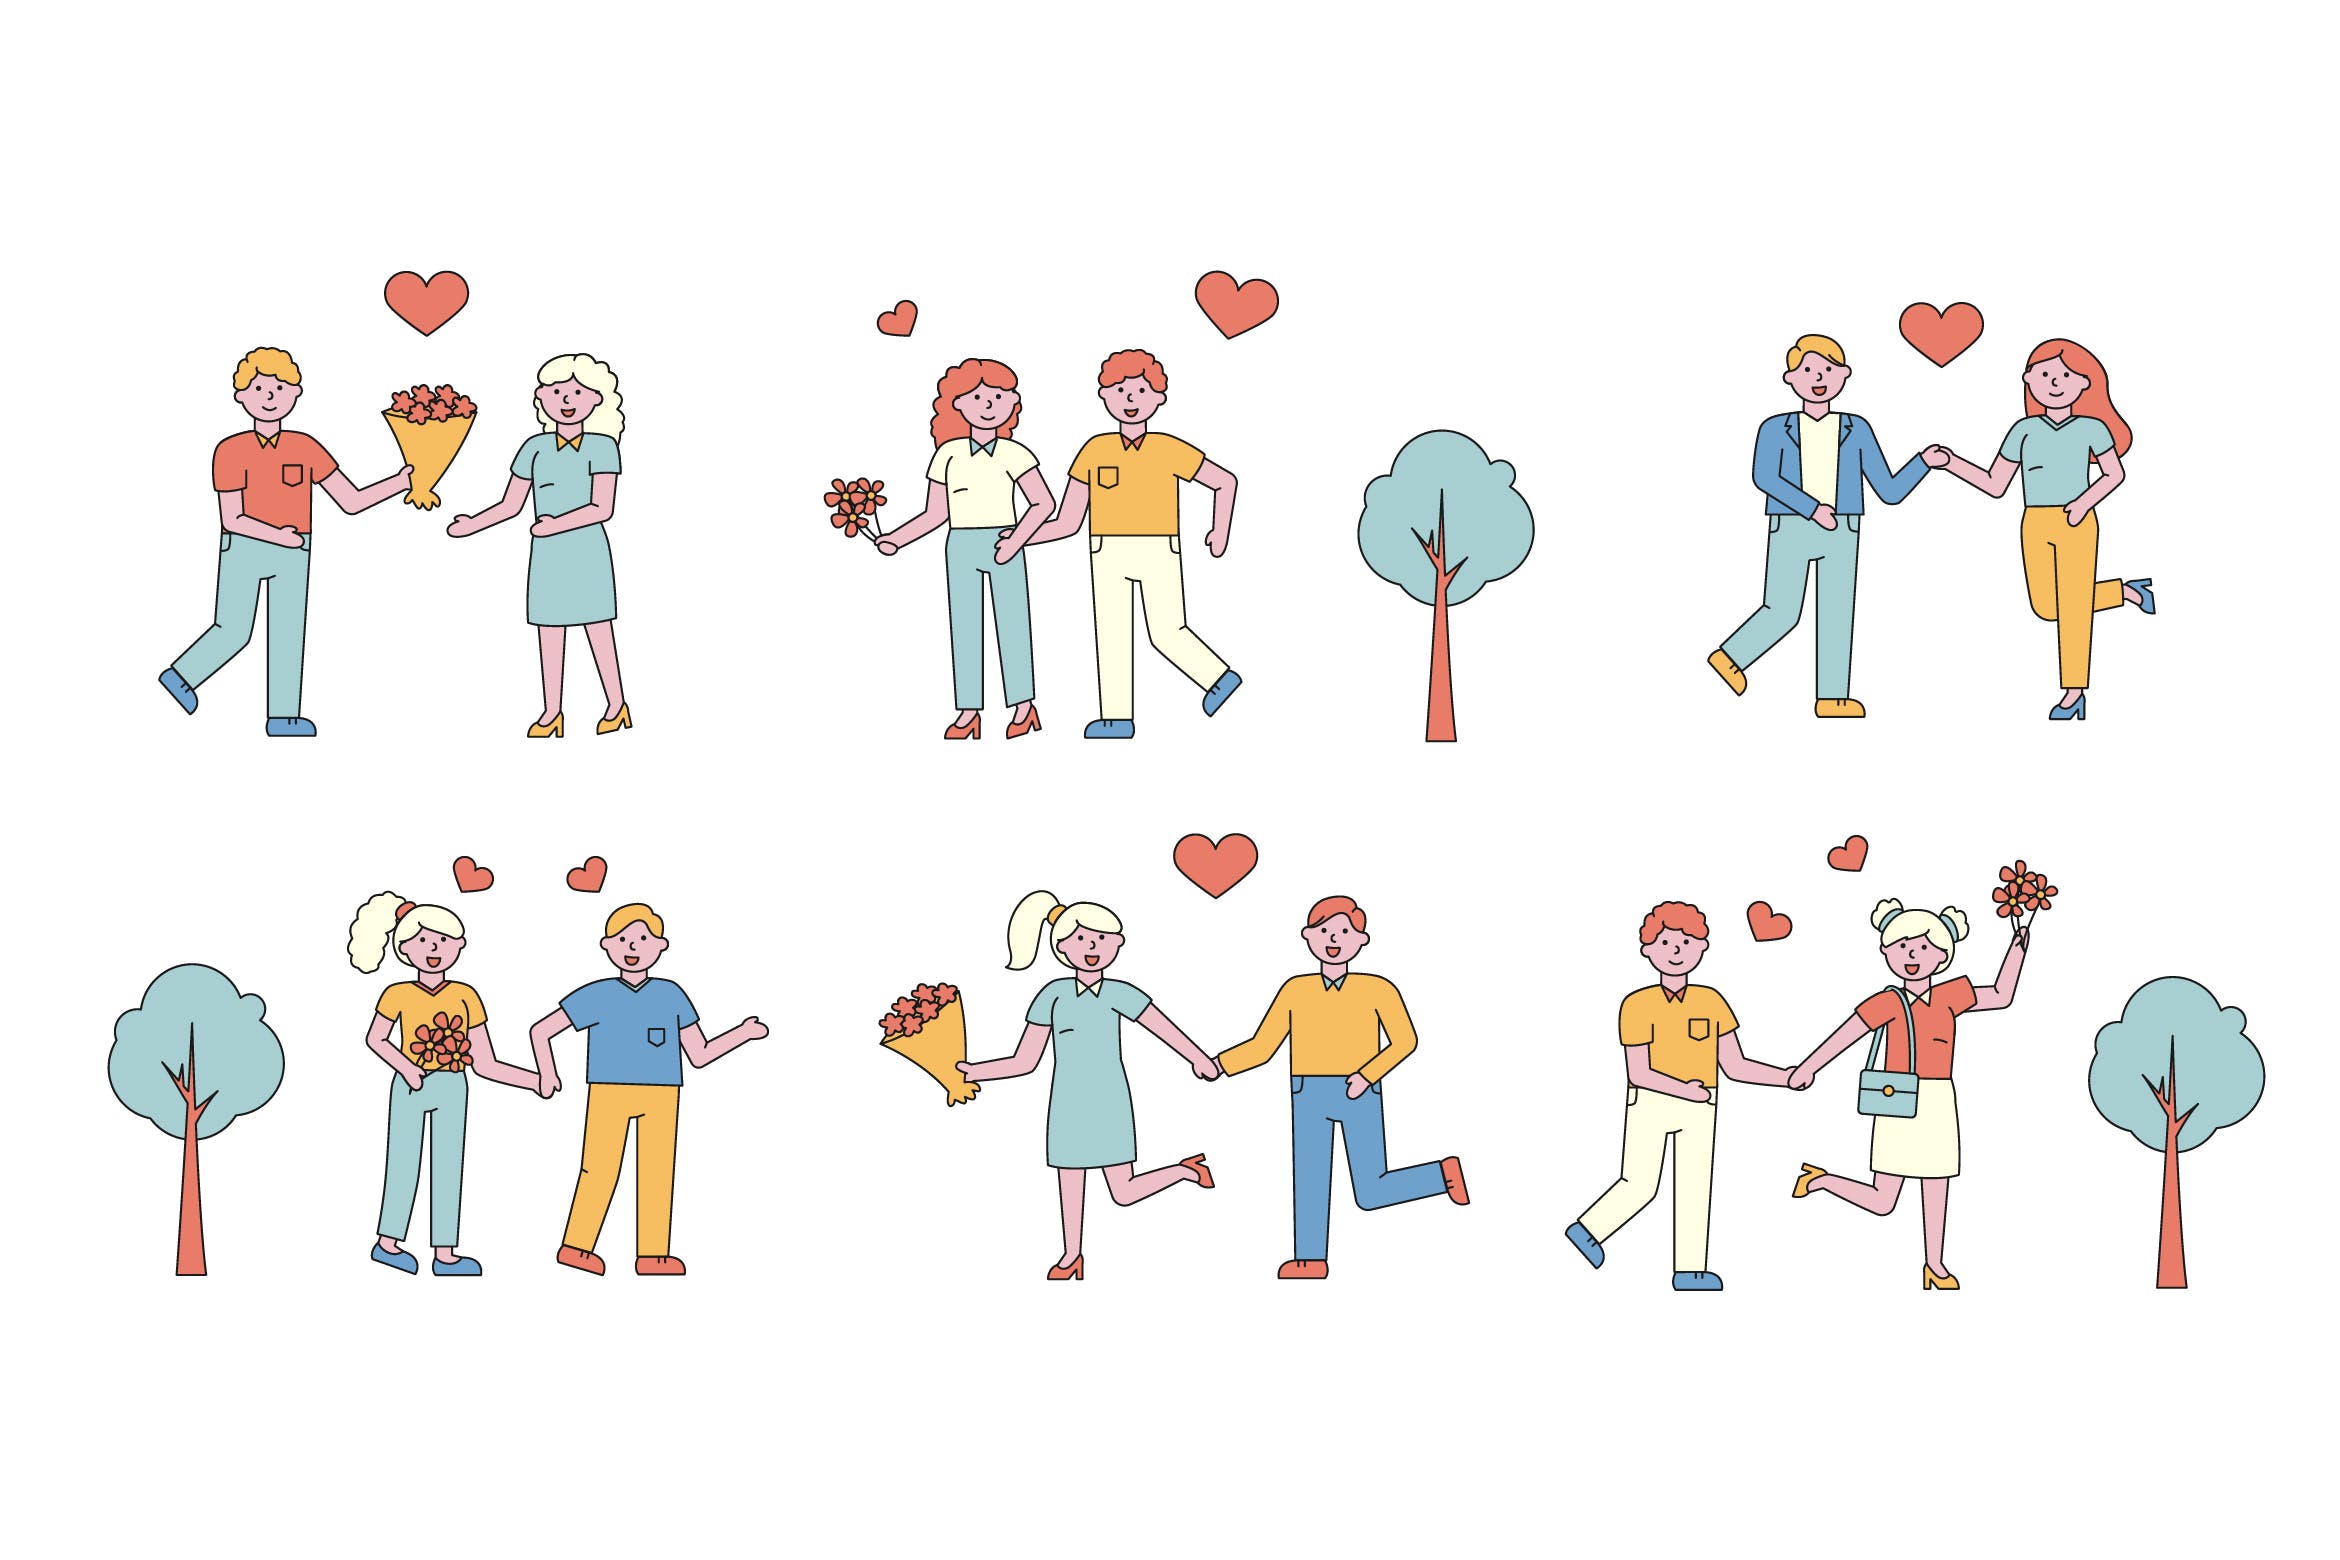 情侣爱情主题人物形象线条艺术矢量插画16设计网精选素材 Romantic Lineart People Character Collection插图